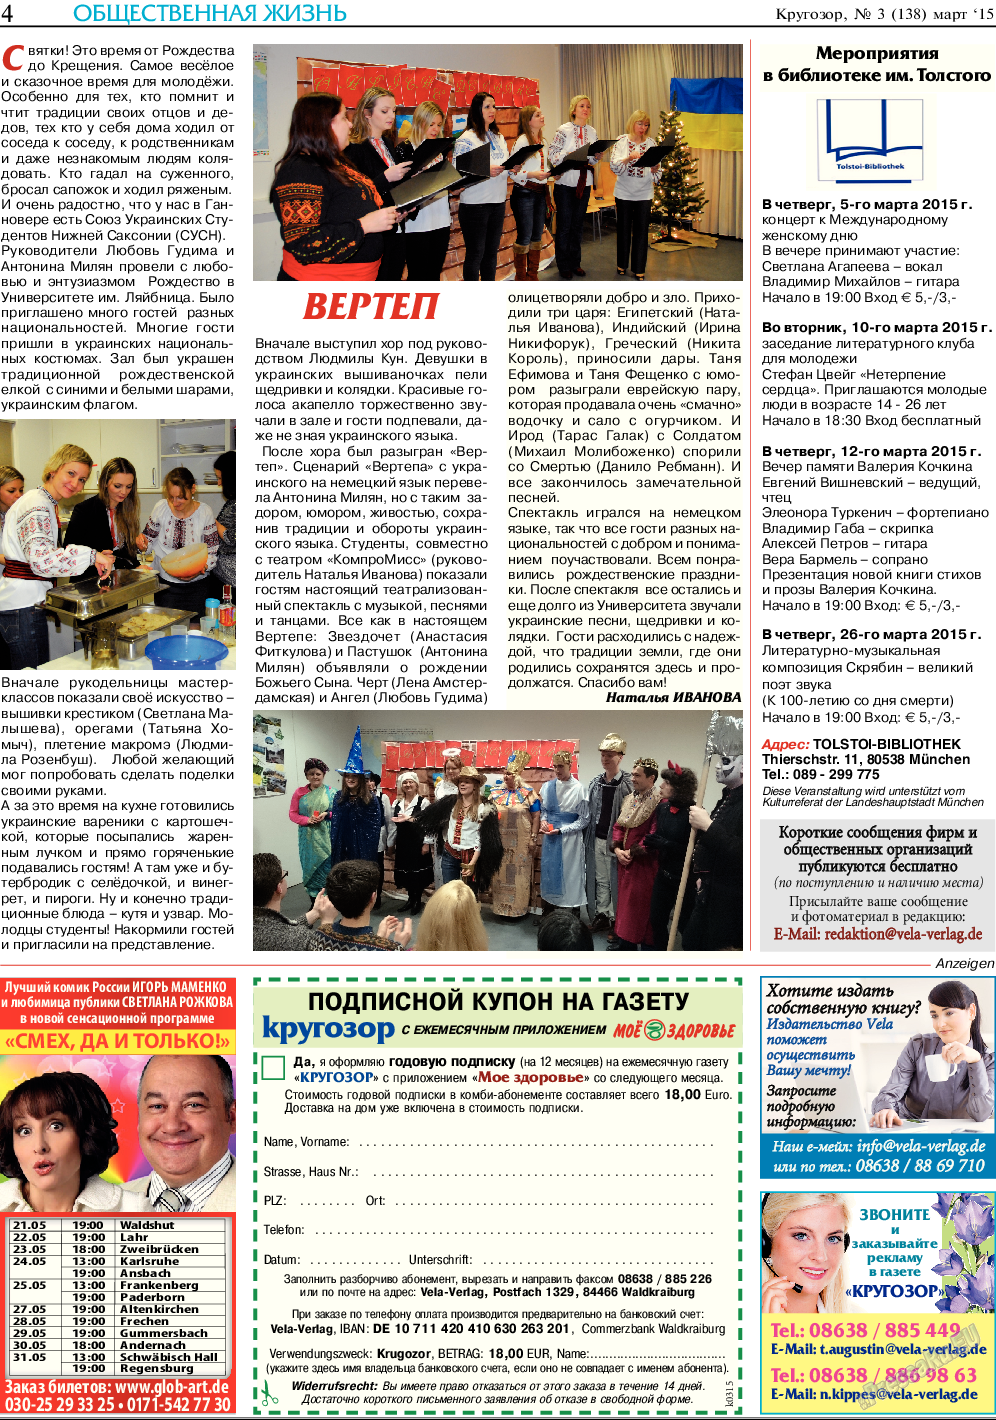 Кругозор, газета. 2015 №3 стр.4